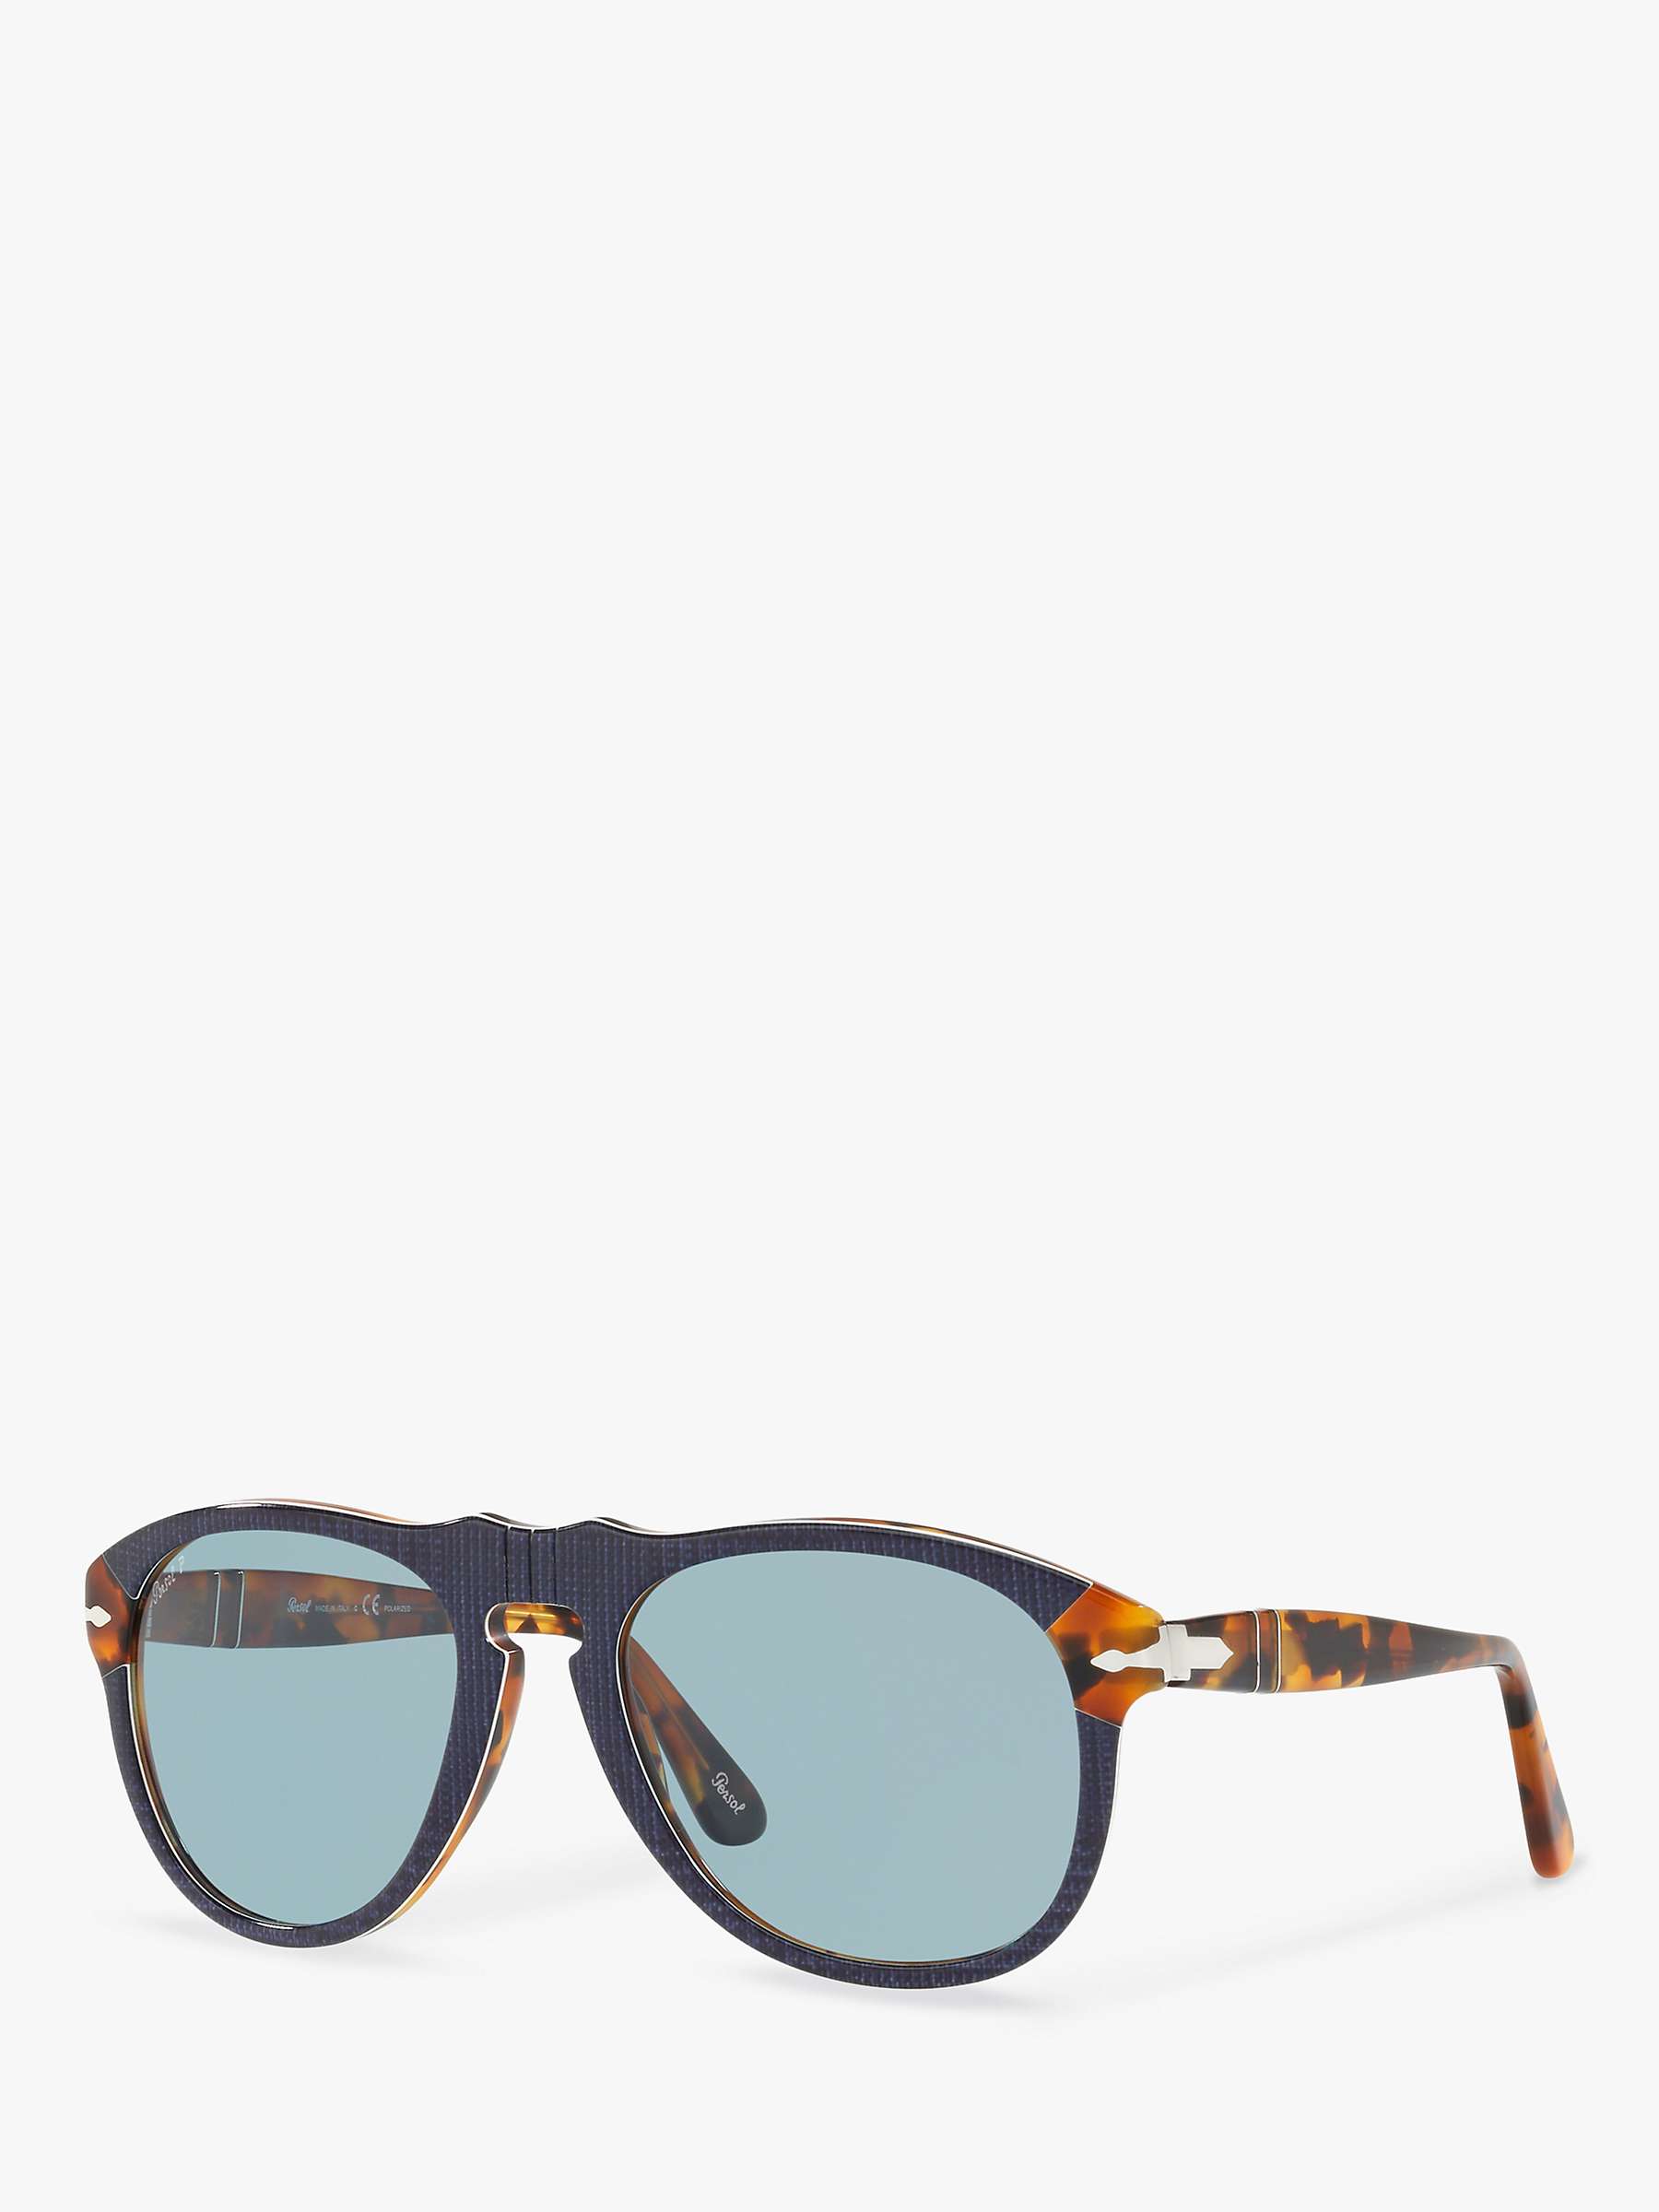 Buy Persol PO6049 Polarised Pilot Sunglasses Online at johnlewis.com